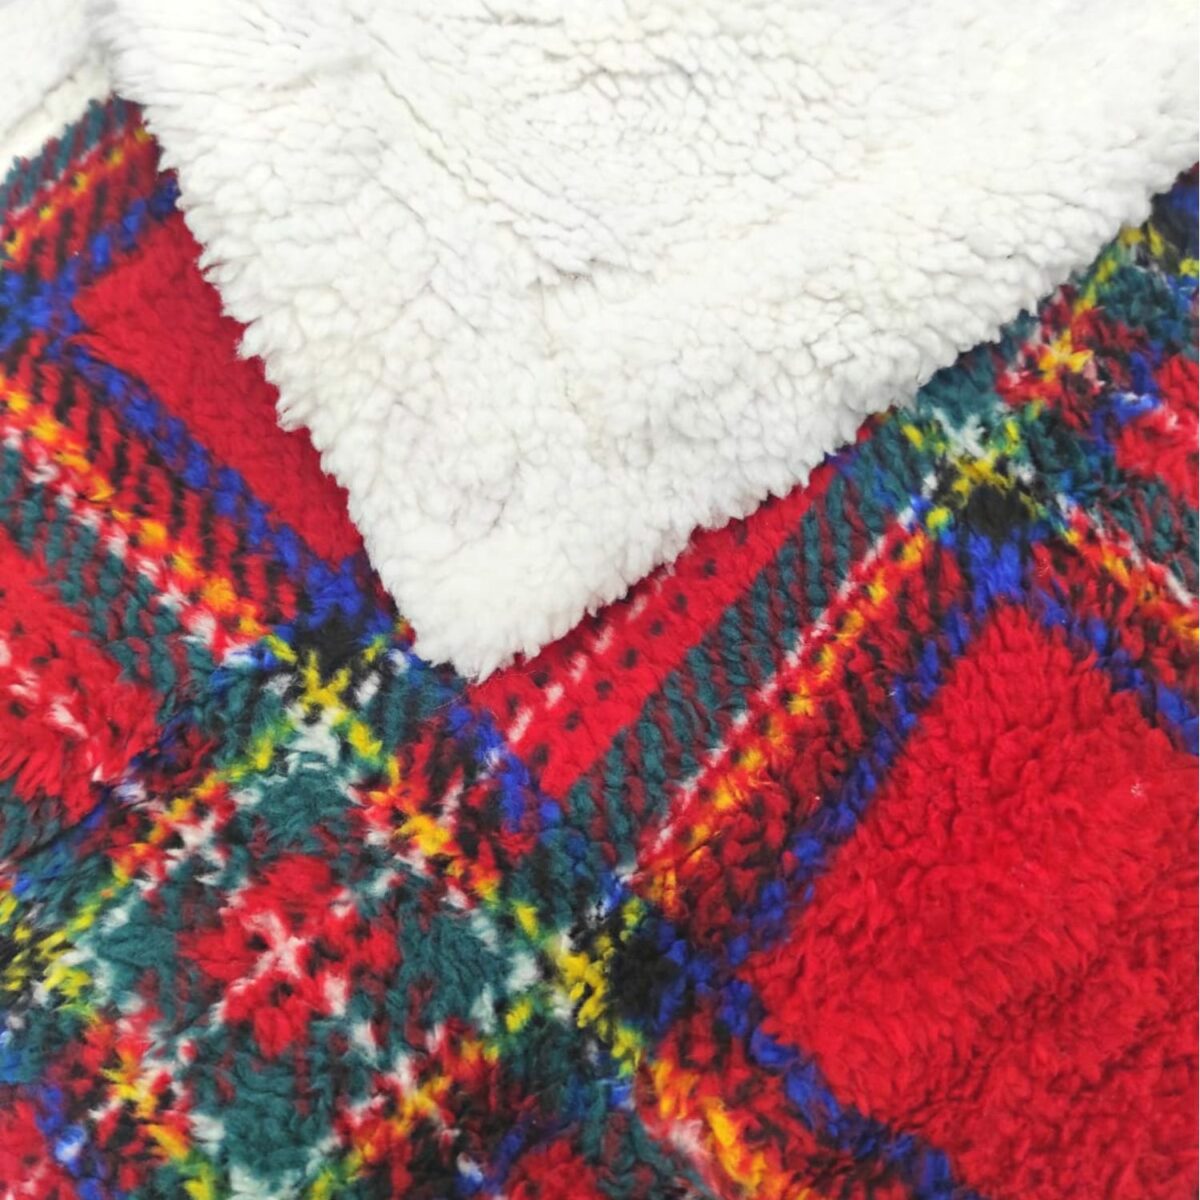 coperta-amburgo-rosso-scozzese-sherpa-calda-morbida-invernale-dettaglio-sherpa